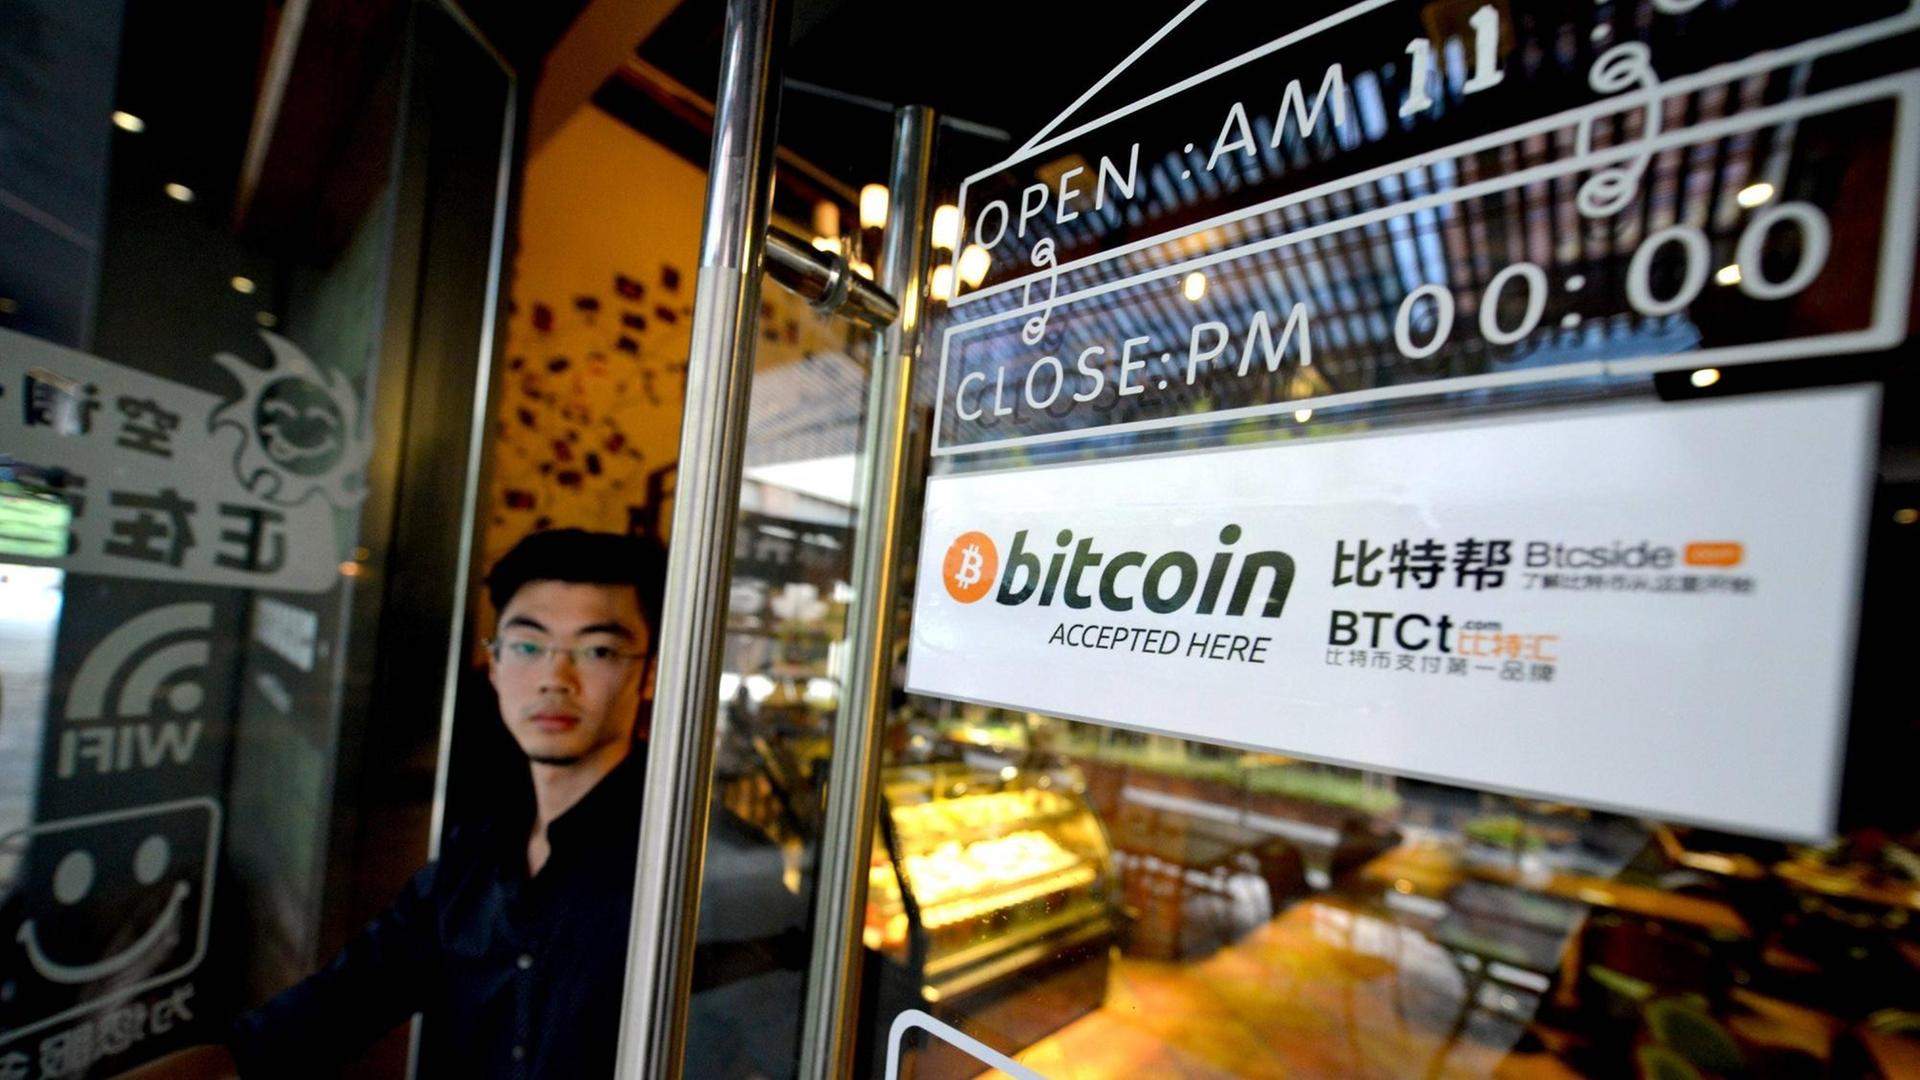 Am Fenster eines Coffeeshops in Nanshan in China hängt ein Schild, das Kunden darüber informiert, dass hier auch mit der digitalen Währung Bitcoin bezahlt werden kann.